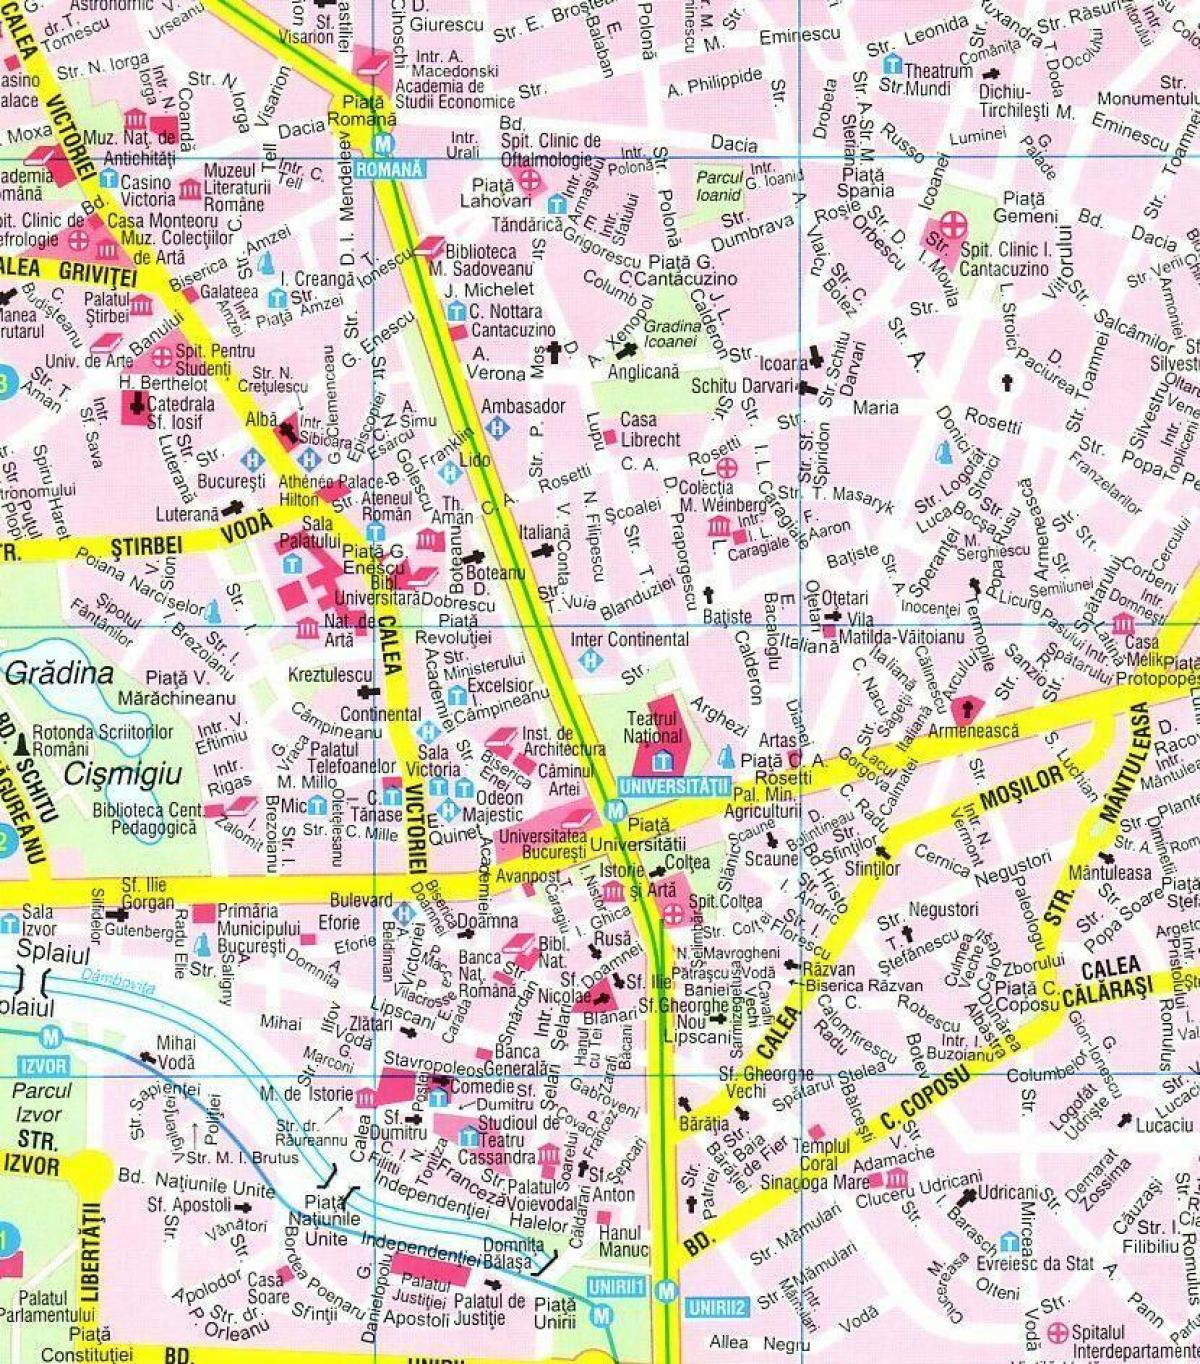 नक्शा बुखारेस्ट के शहर के केंद्र